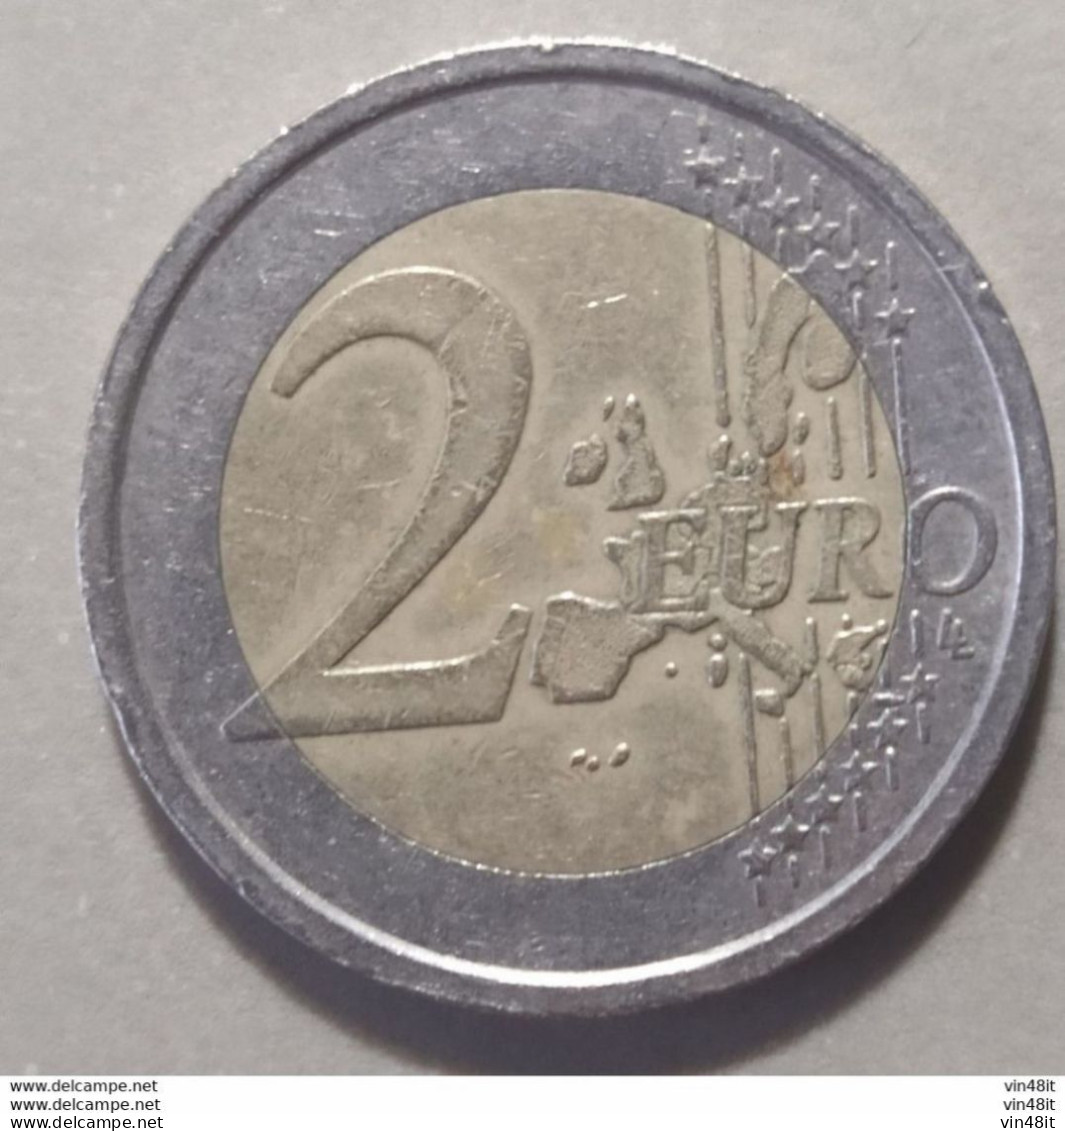 2014 -  SLOVENIA - MONETA IN EURO -  (COMMEMORATIVA)  DEL VALORE DI 2,00  EURO -  USATA- - Slowenien